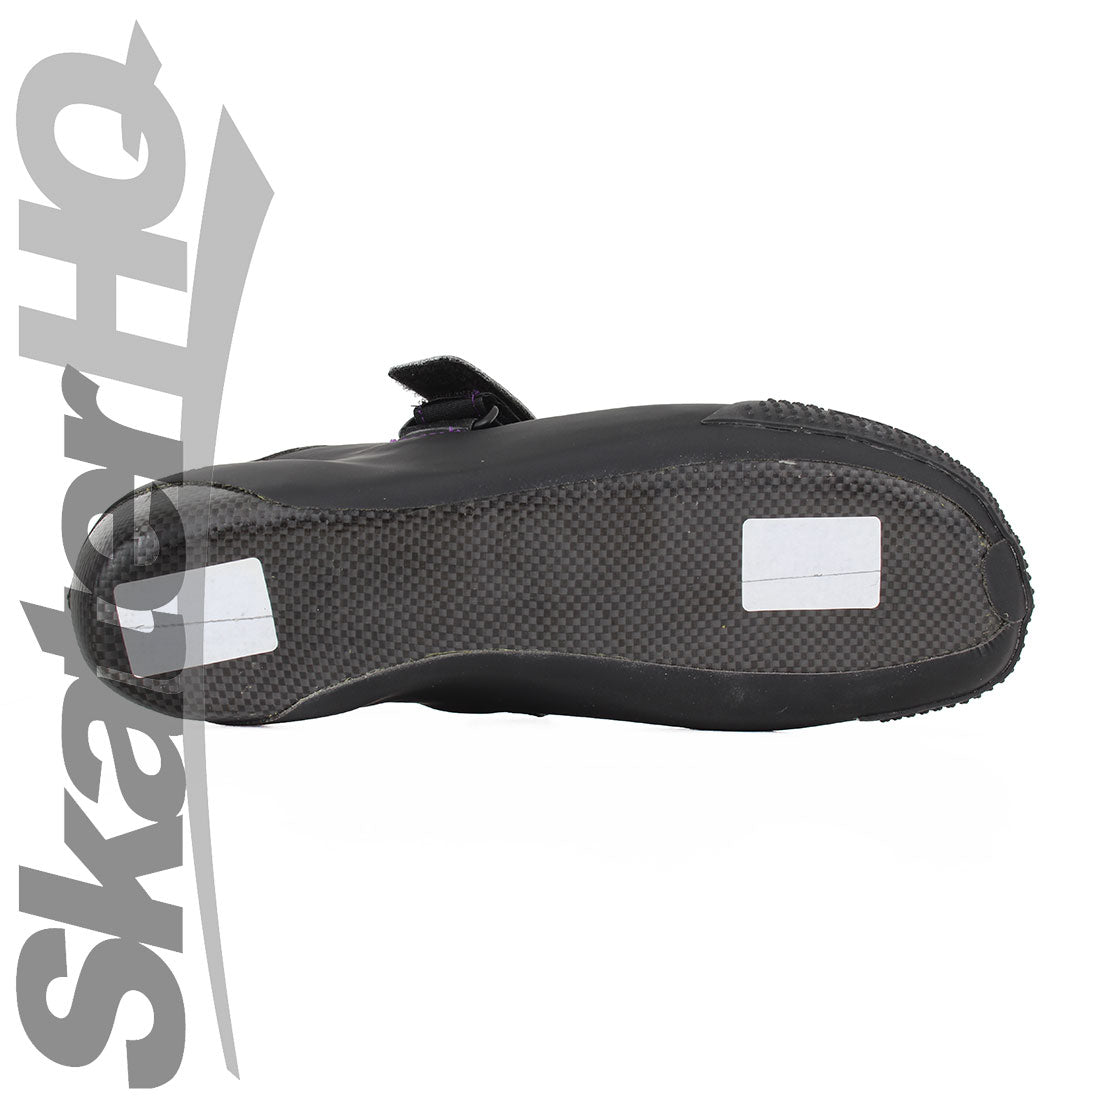 Bont Hybrid V2 Carbon Durolite Boot - Black/Purple Stitching Roller Skate Boots